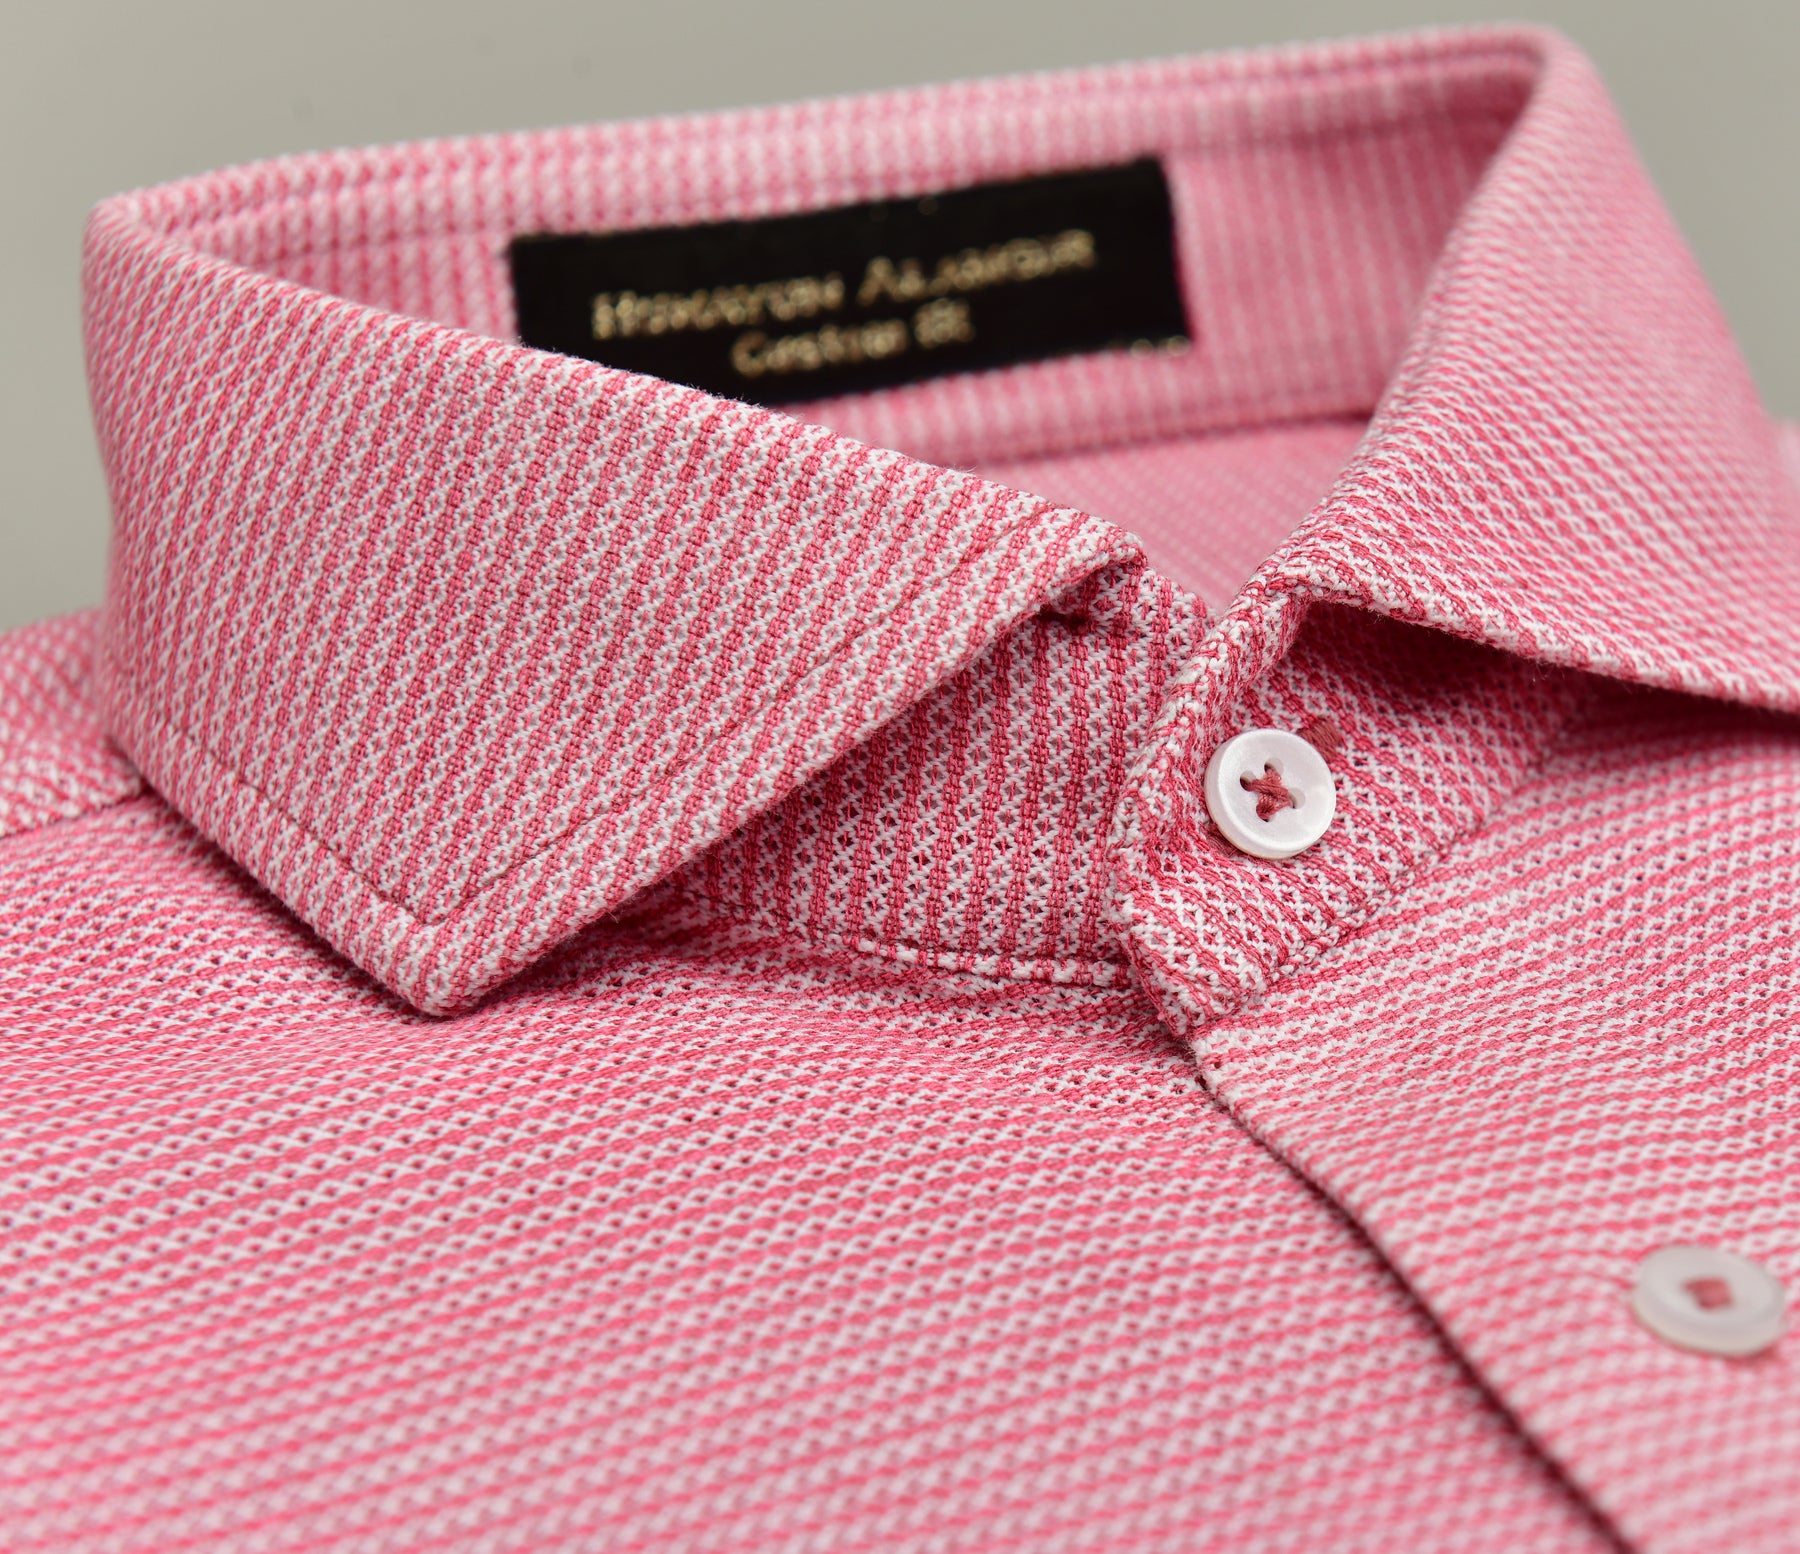 Pink Harybon Egyption Cotton Shirt